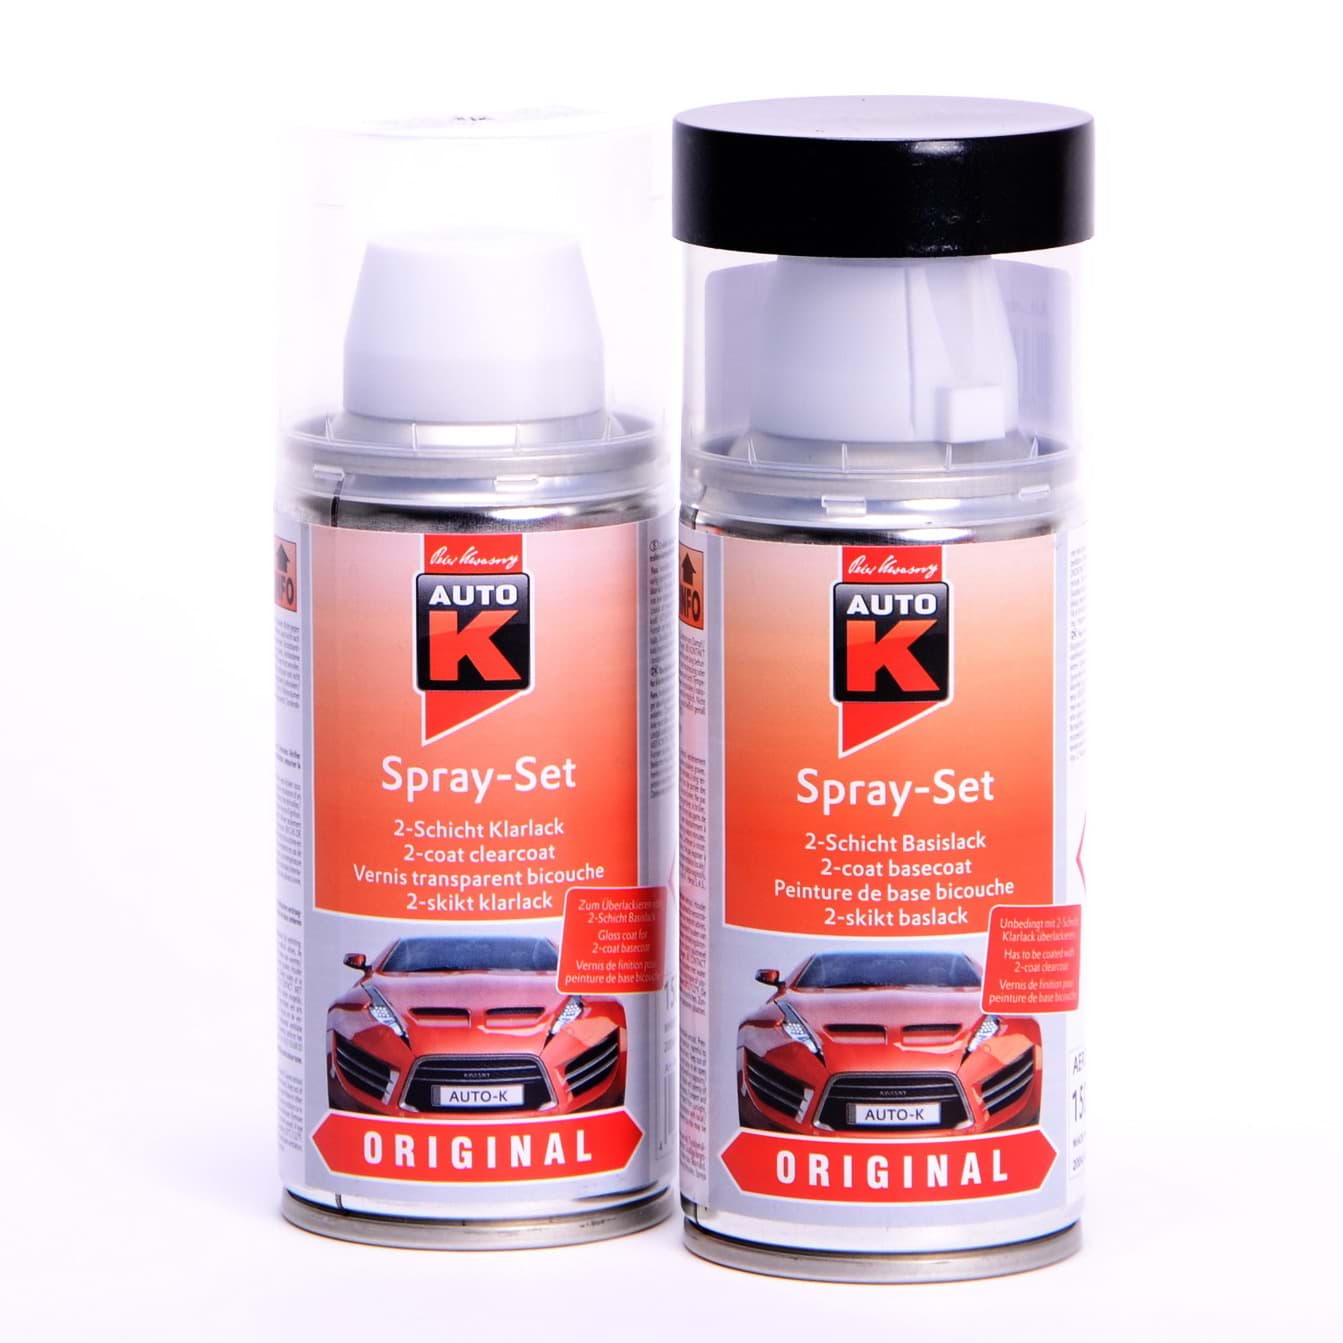 Afbeelding van Auto-K Spray-Set Autolack für Mercedes 792 Palladiumsilber met 23345